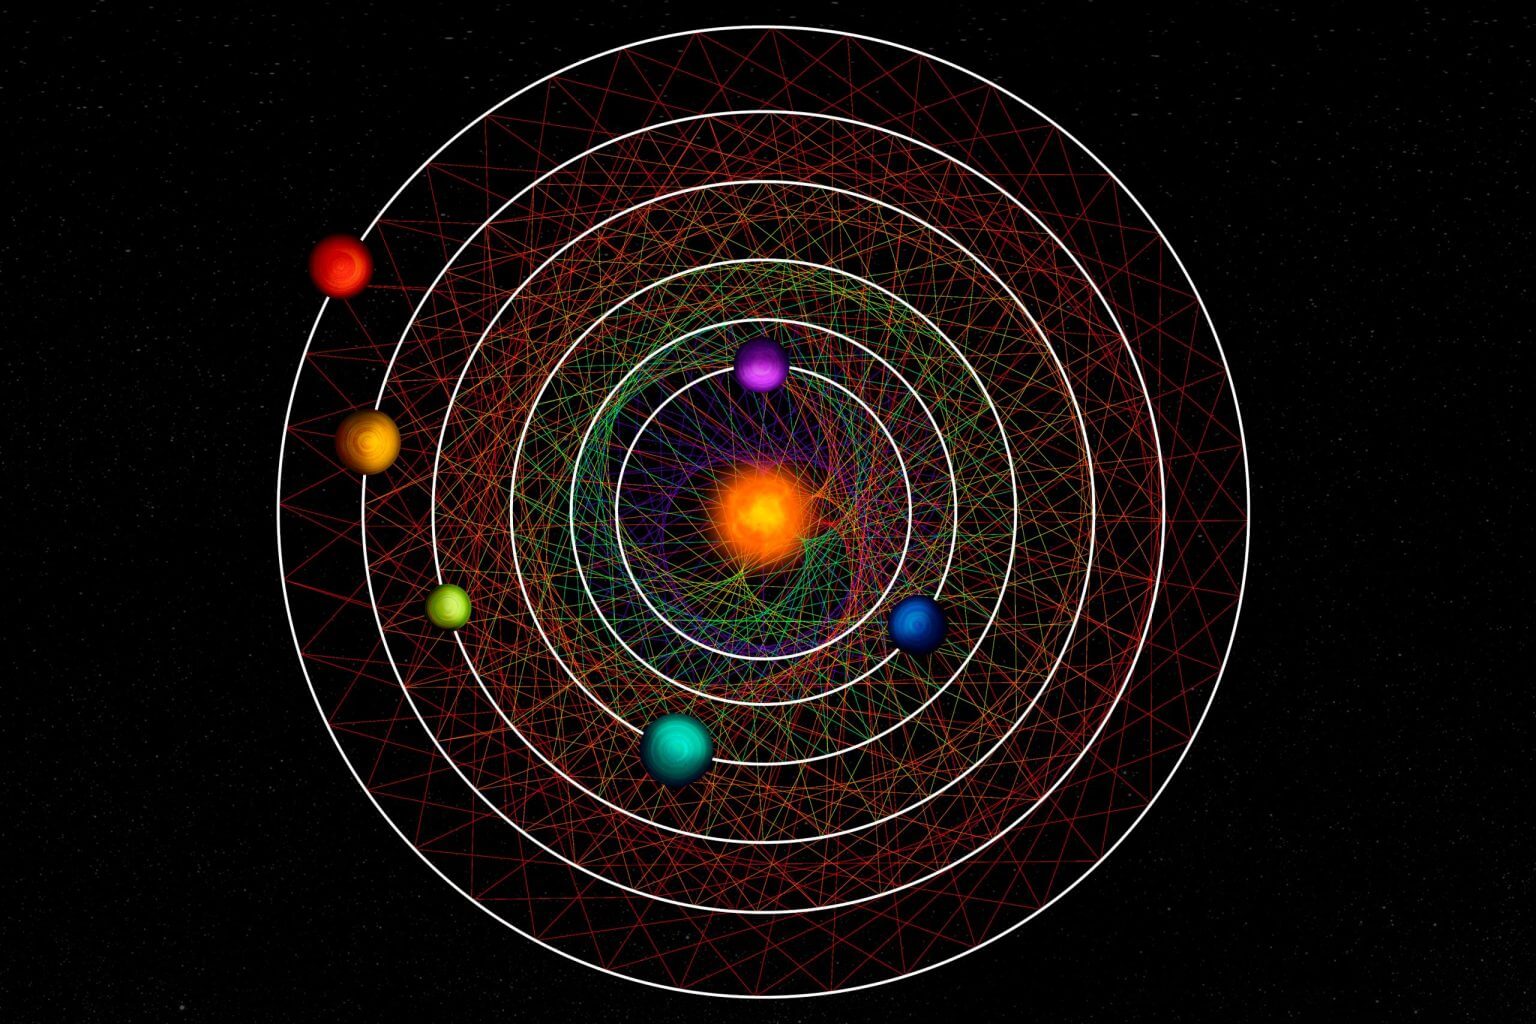 איור אמן של שש הפלנטות שהתגלו לאחרונה המקיפות את הכוכב שלהן בתהודה.
קרדיט: Roger Thibaut (NCCR PlanetS)